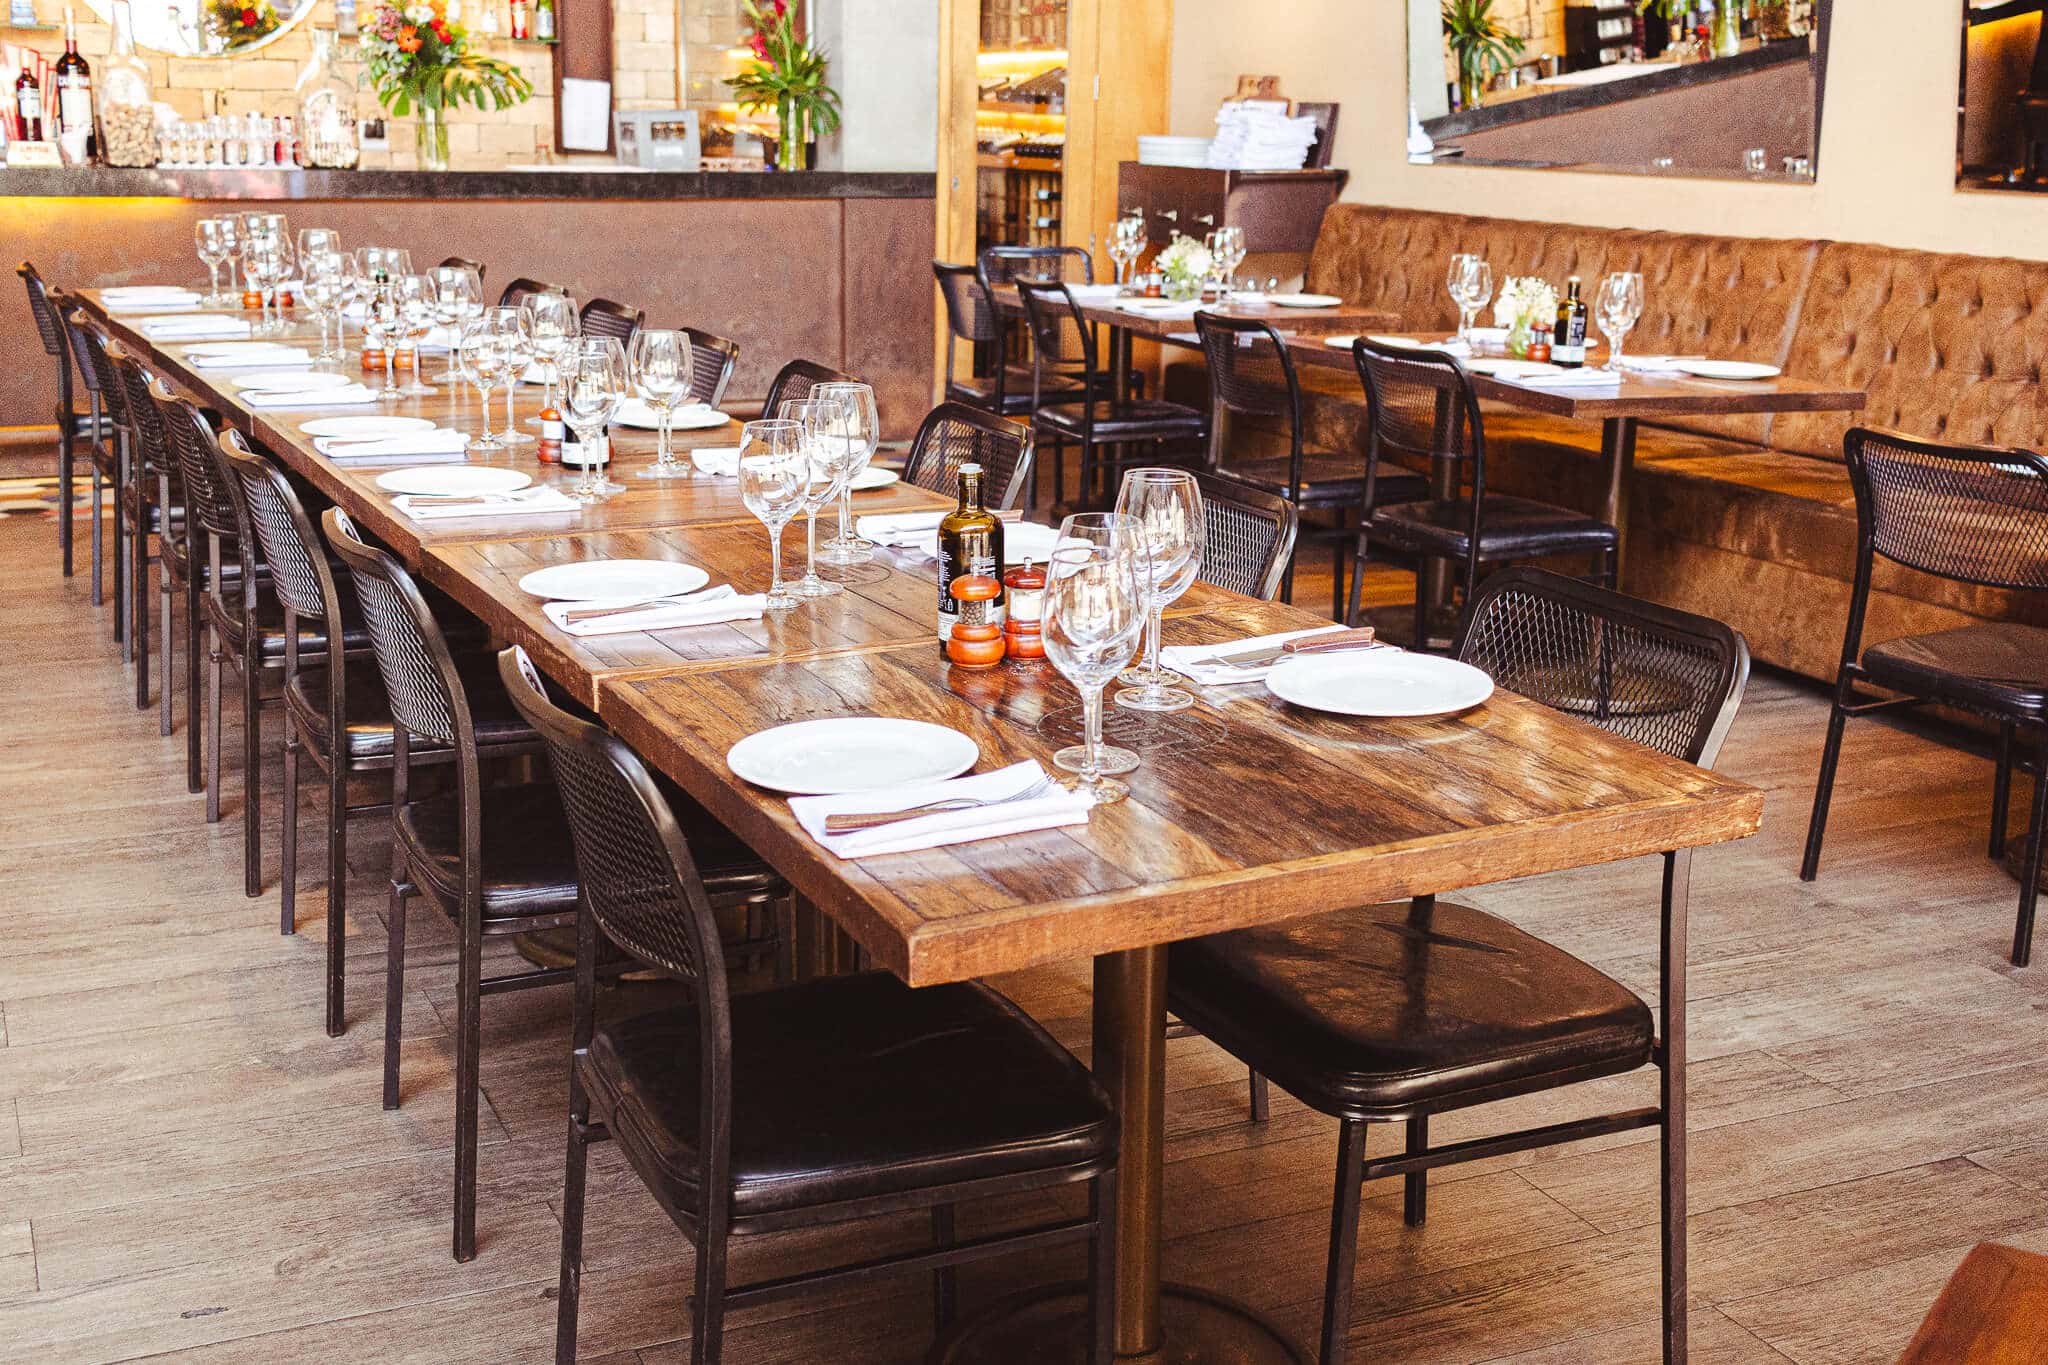 foto mostra ambiente interno do restaurante fogo steakhouse com mesas grandes e cadeiras no estilo industrial